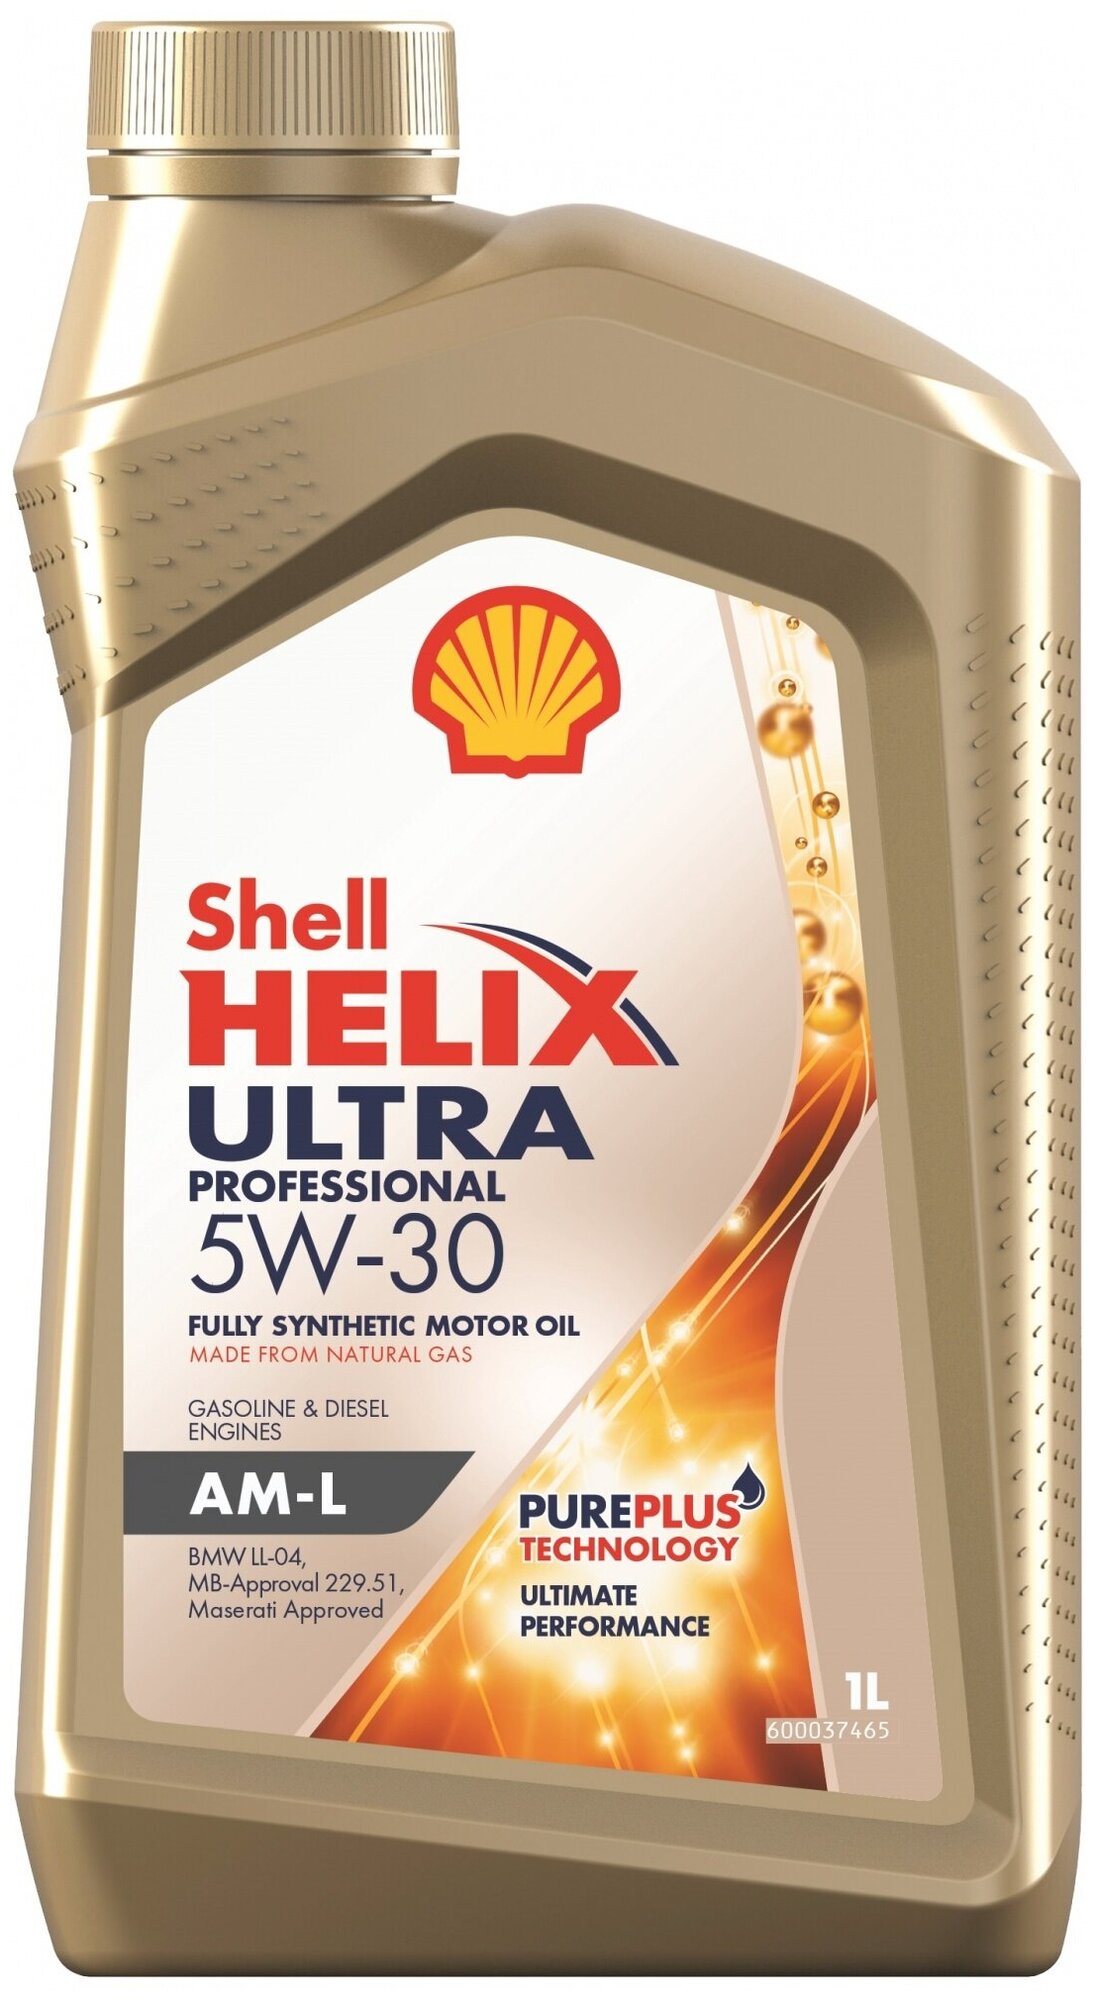 Синтетическое моторное масло SHELL Helix Ultra Professional AM-L 5W-30